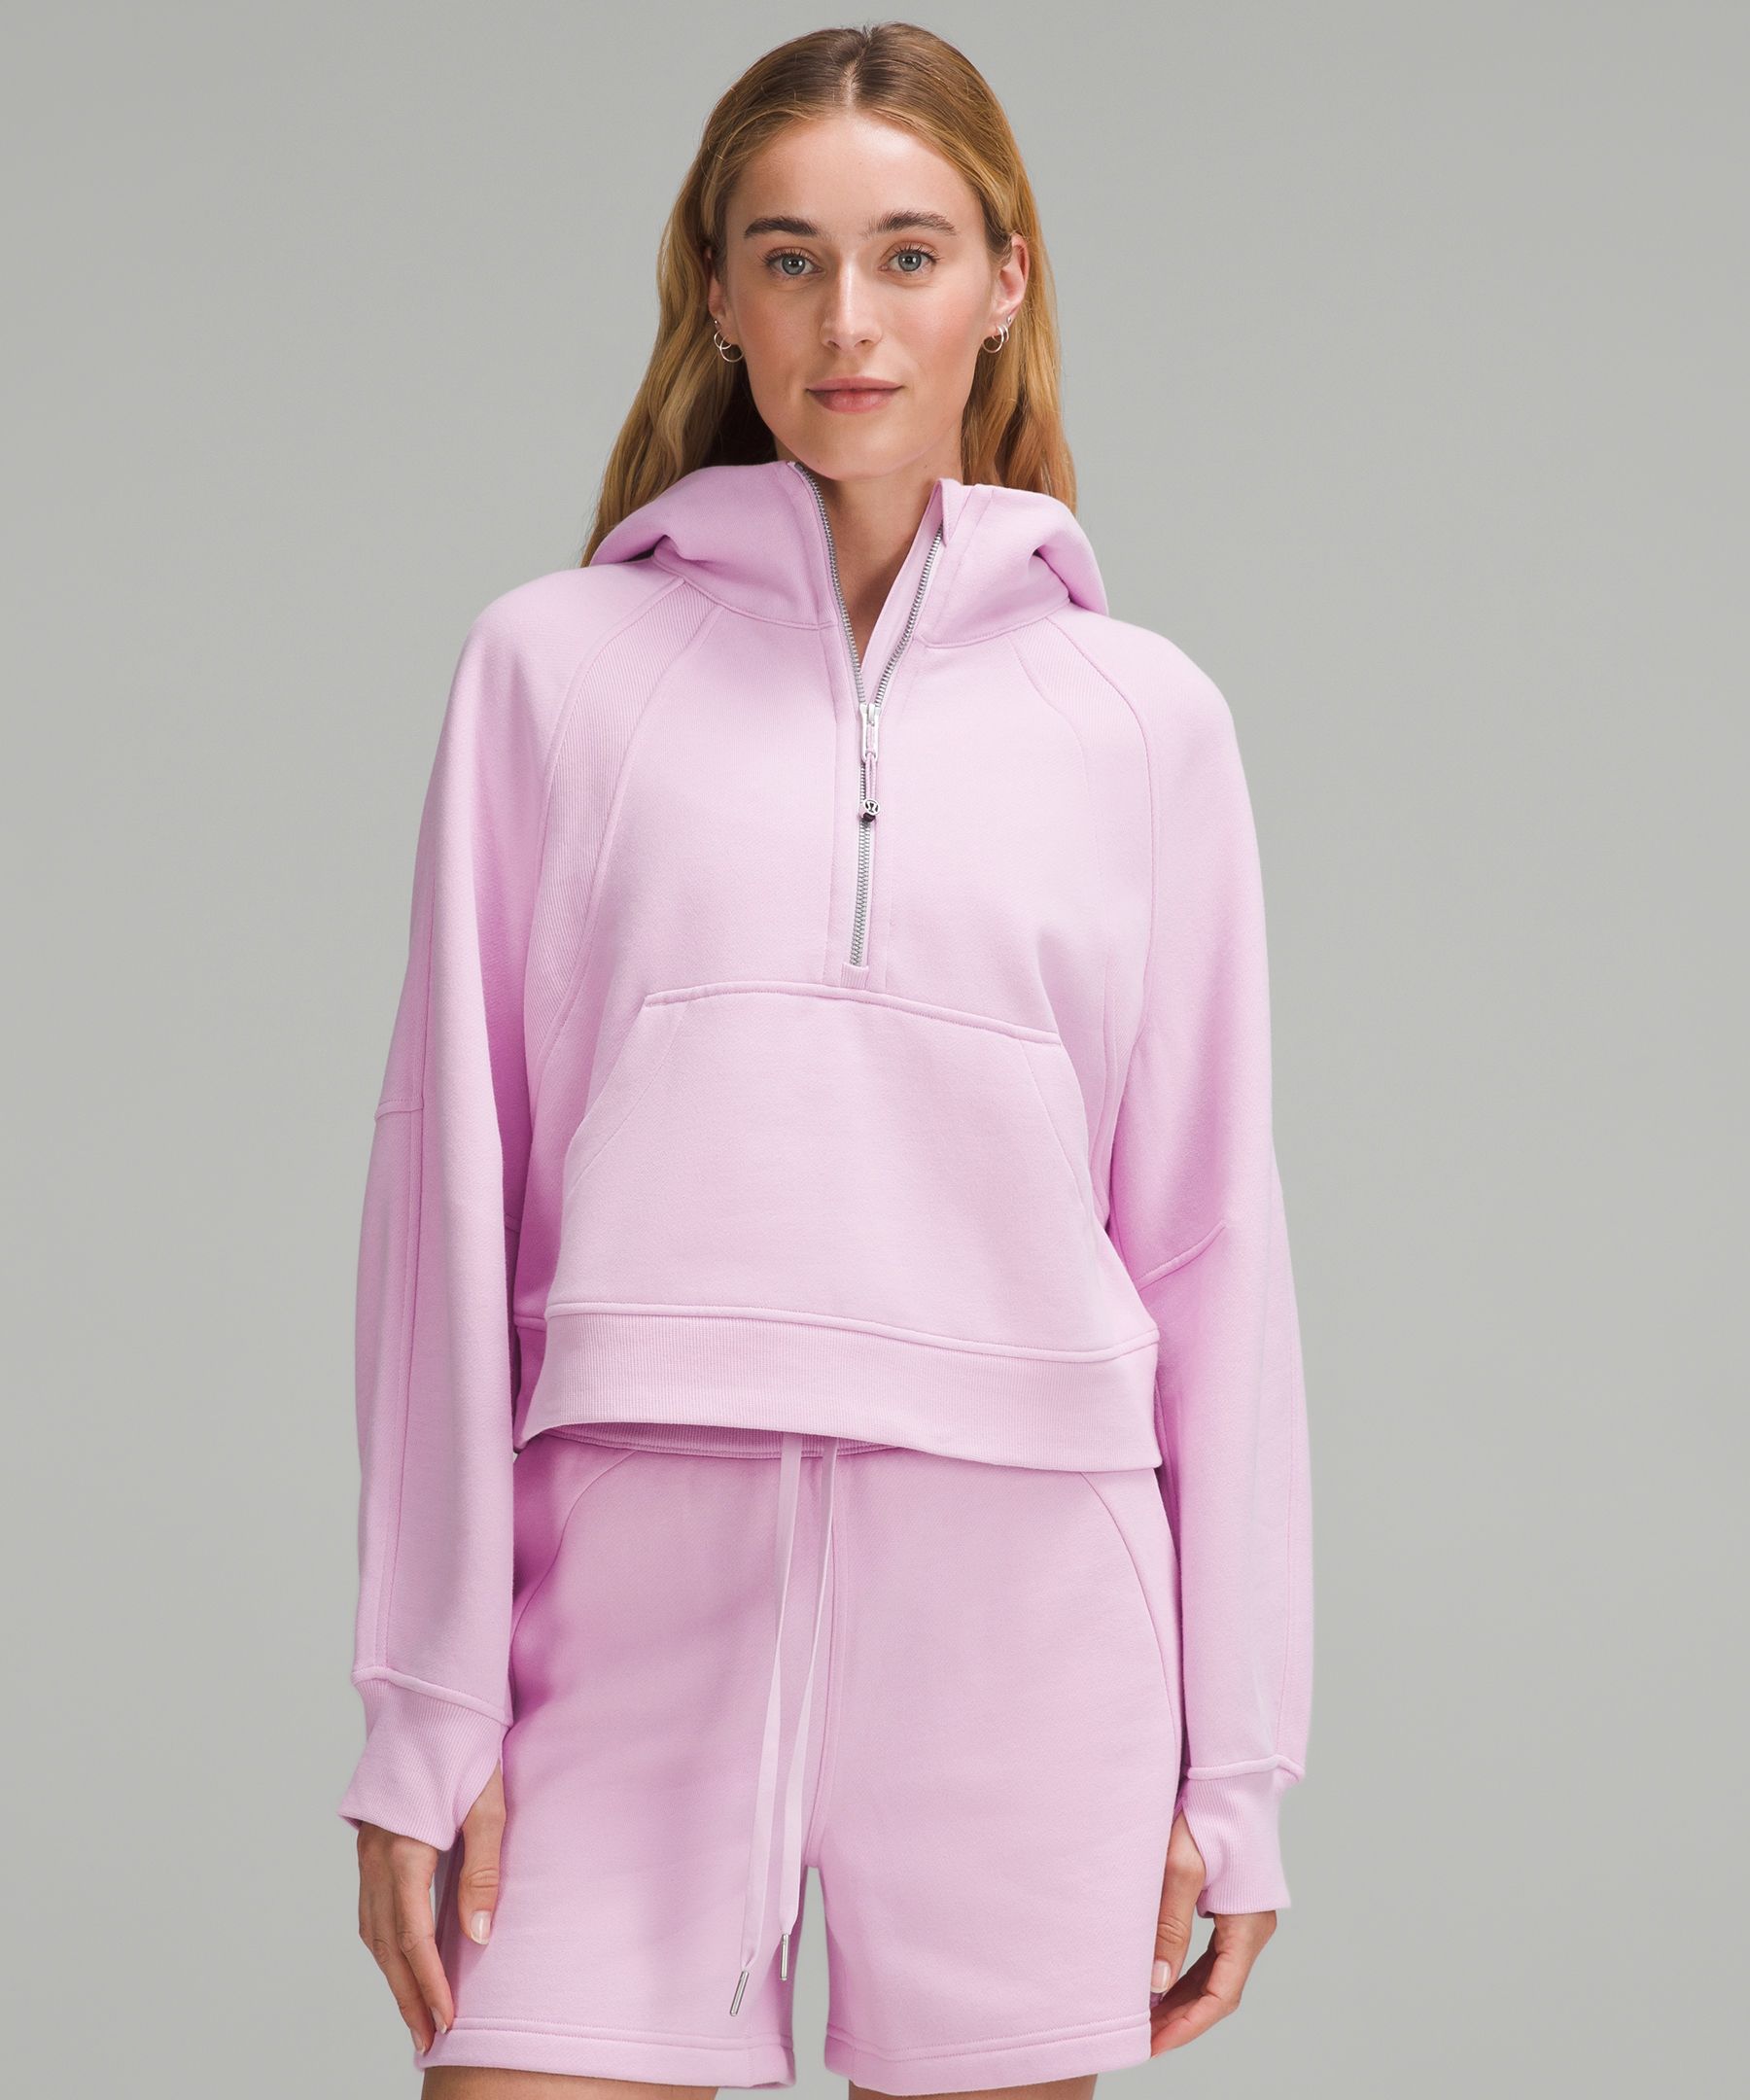 Scuba Oversized Half-Zip Hoodie | Women's Hoodies & Sweatshirts 